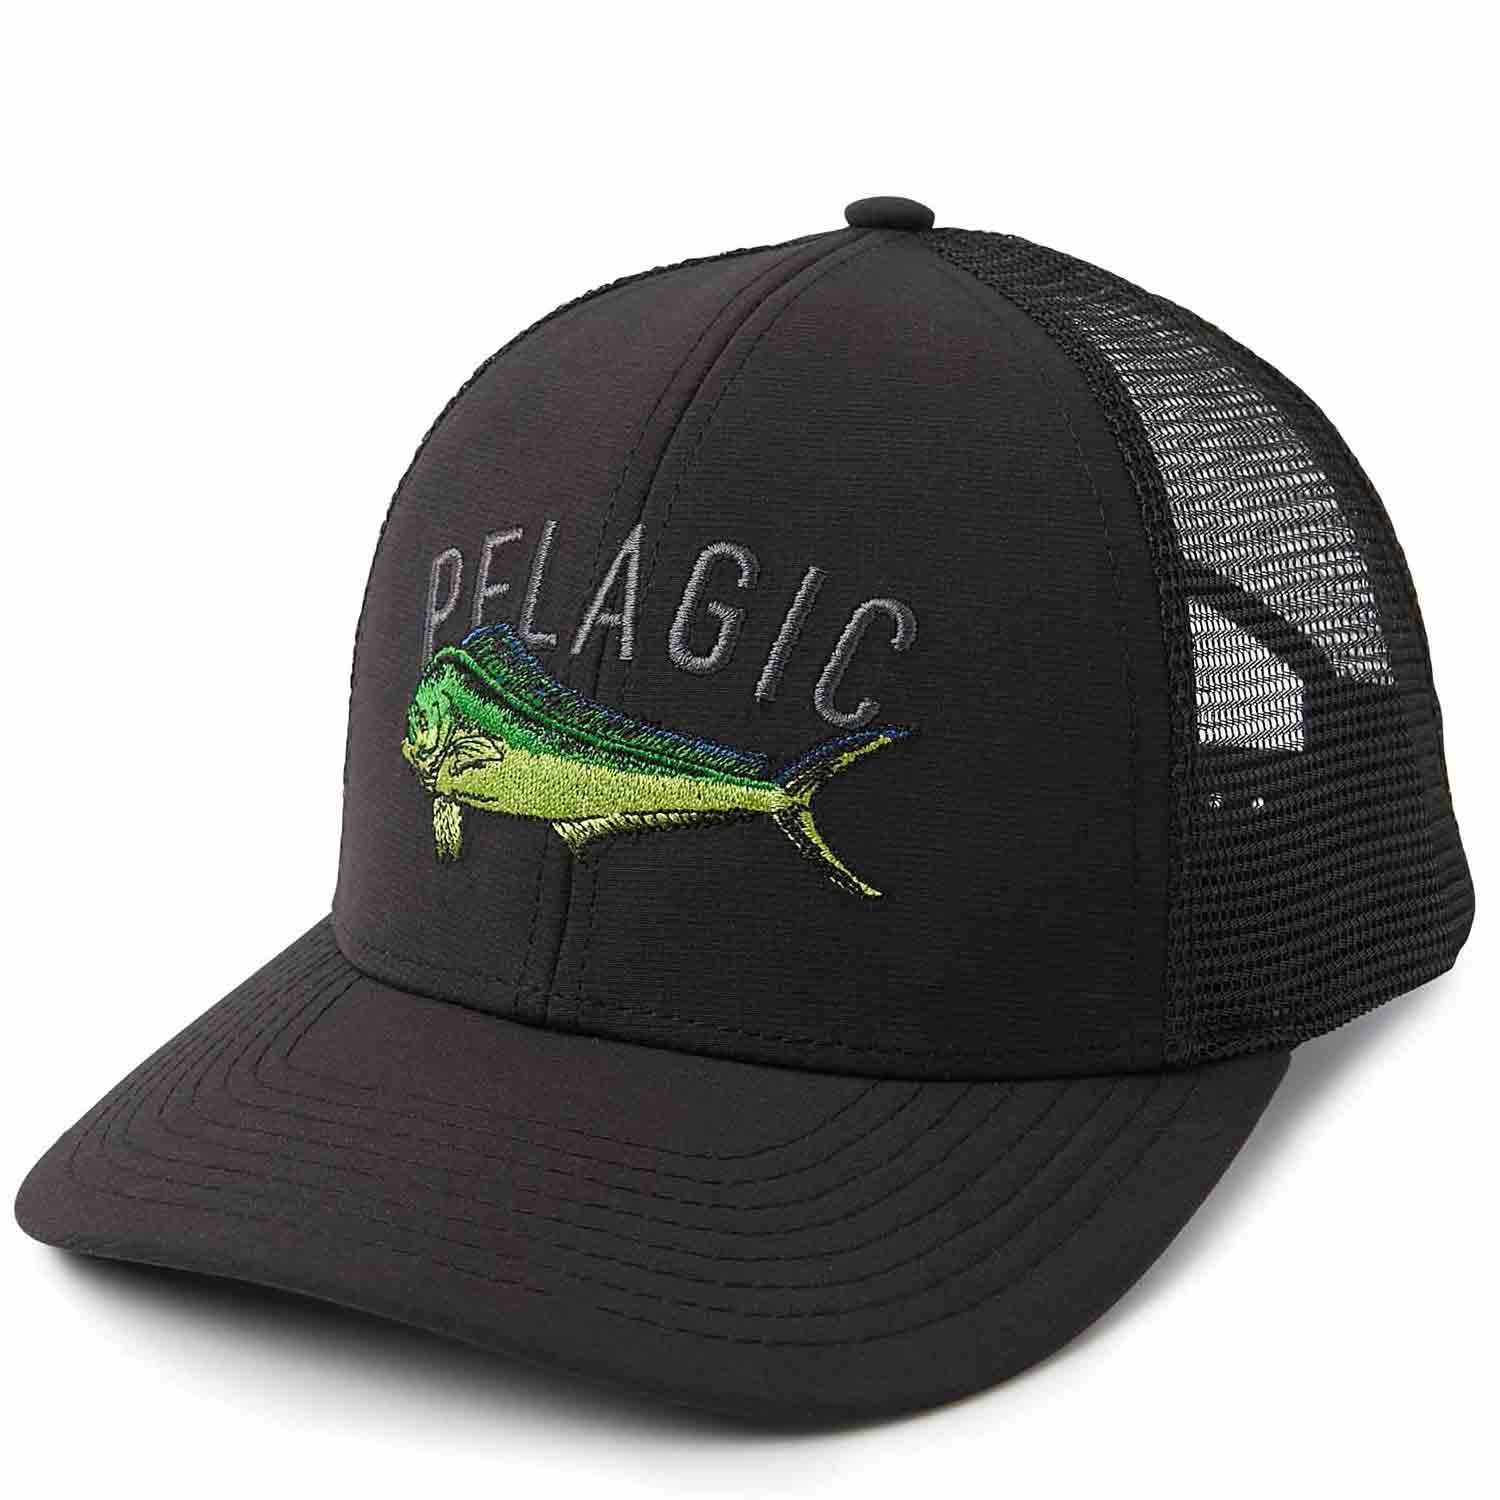 Pelagic Dorado SpeciesBlackCotton/Polyester